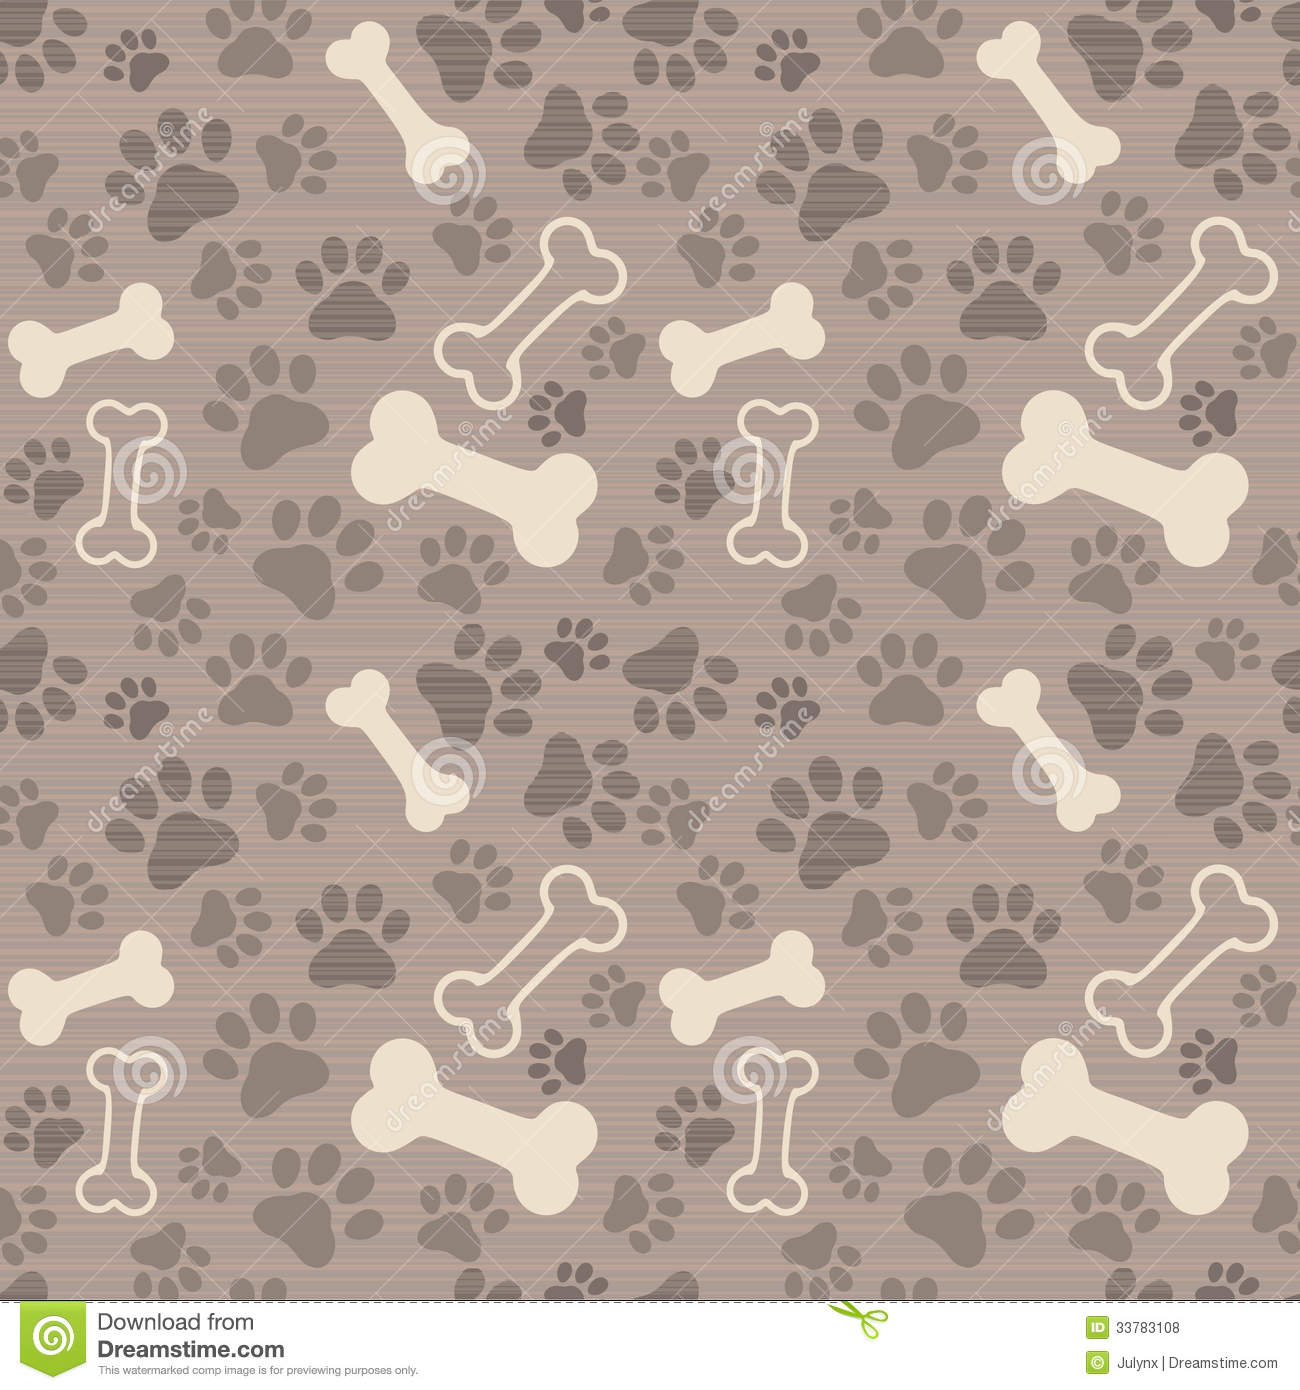 Displaying Image For Dog Bones Wallpaper